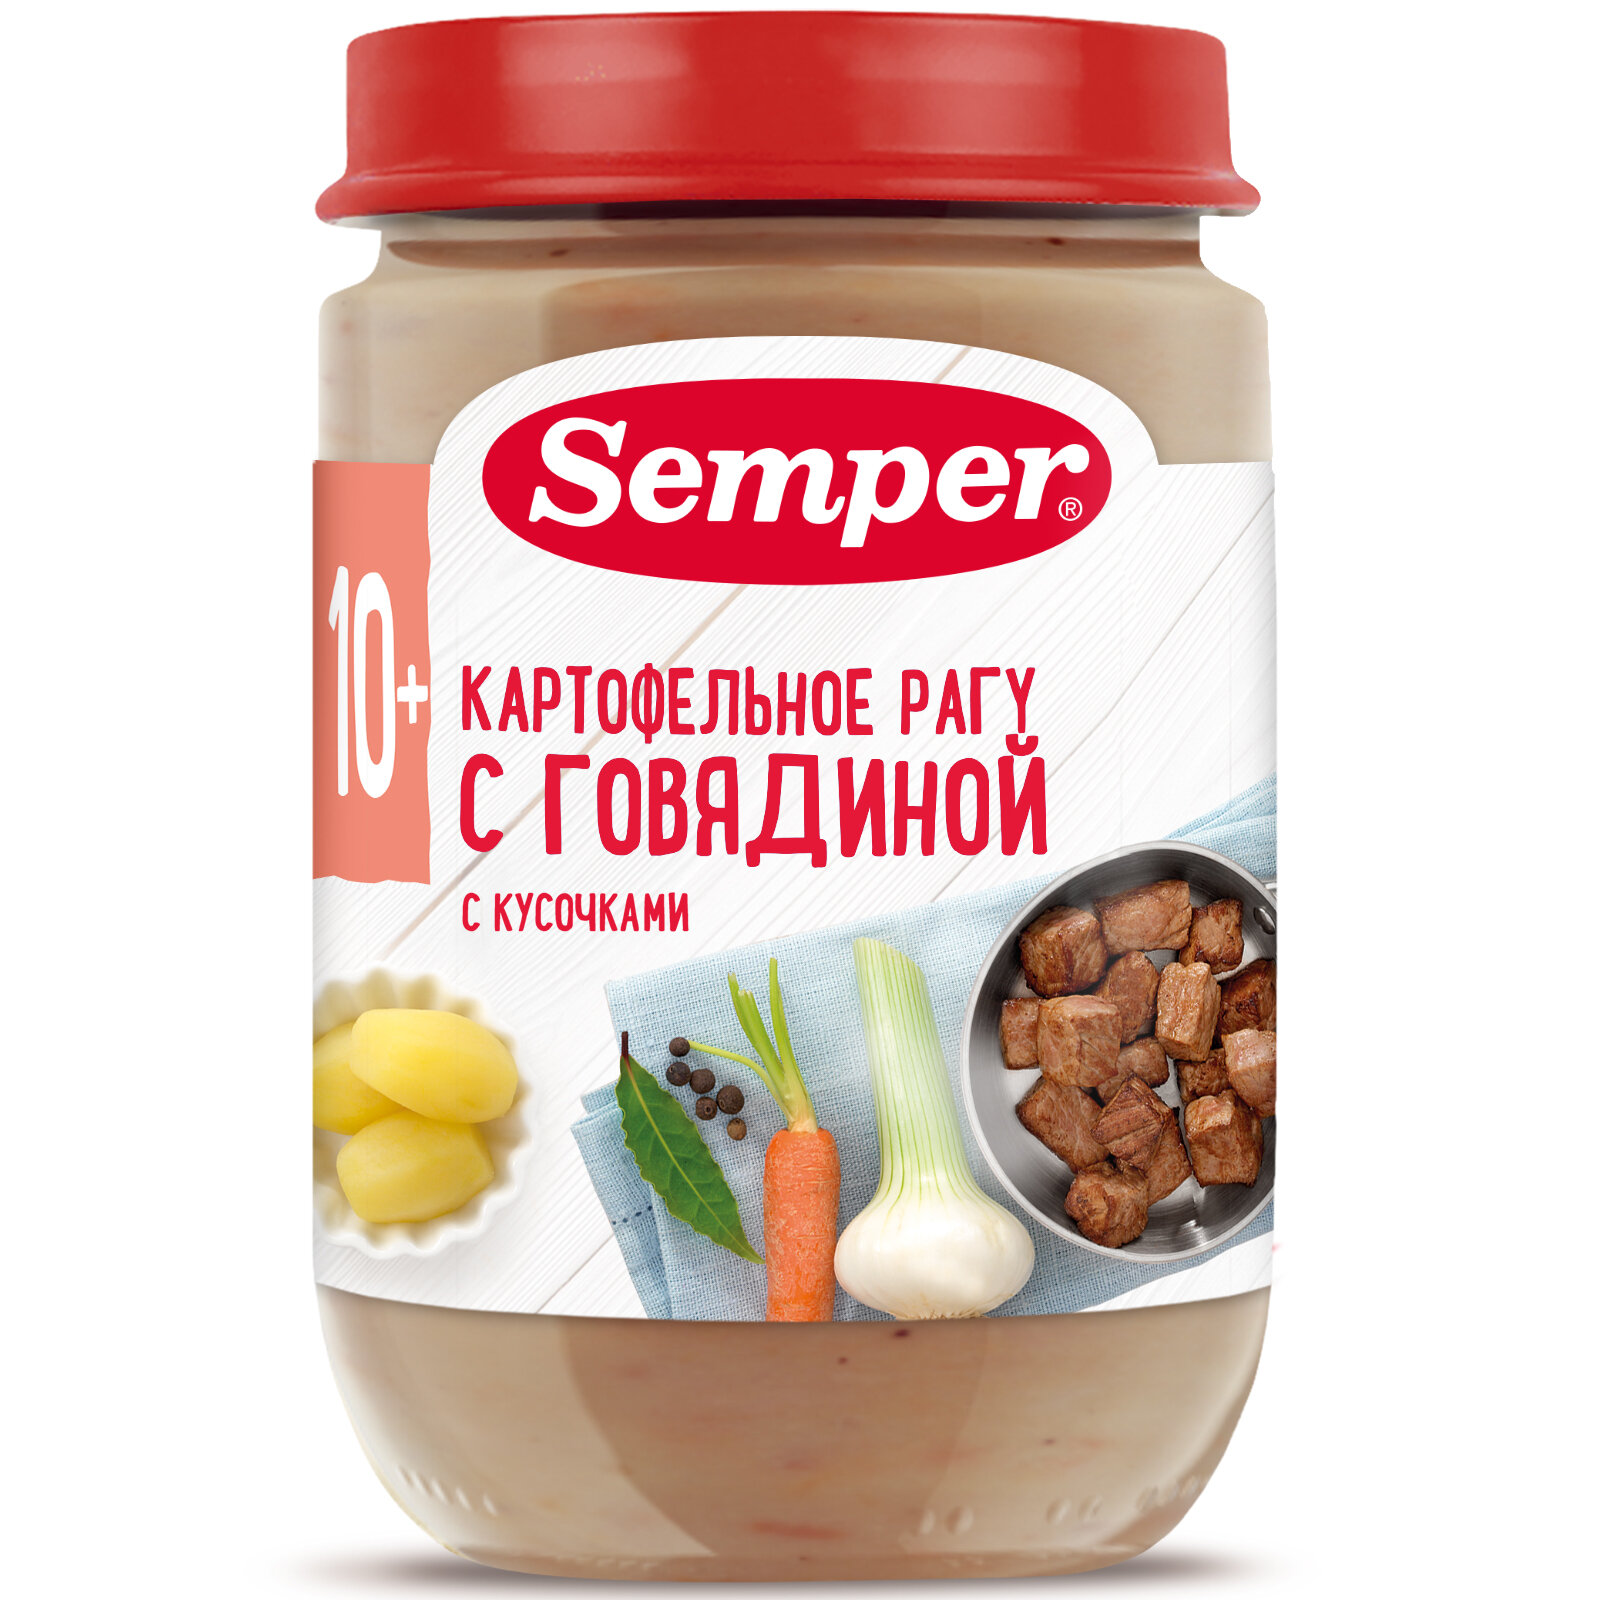 Semper - пюре картофельное рагу с говядиной, 10 мес, 190 гр